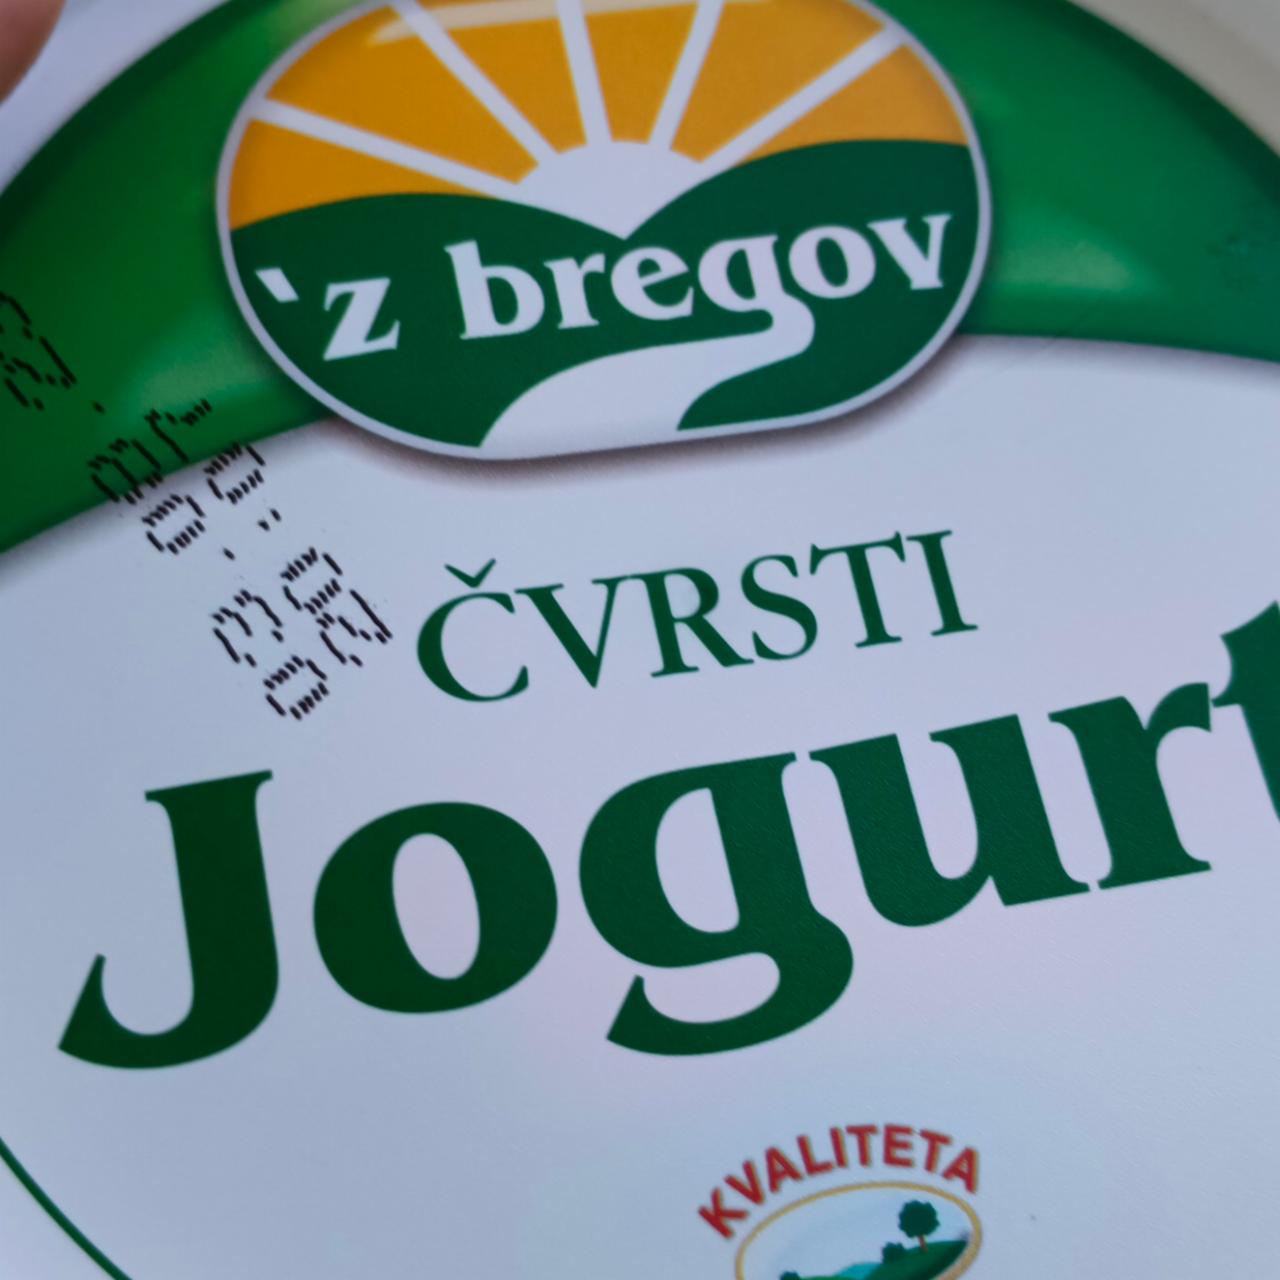 Fotografie - Čvrsti jogurt Z bregov